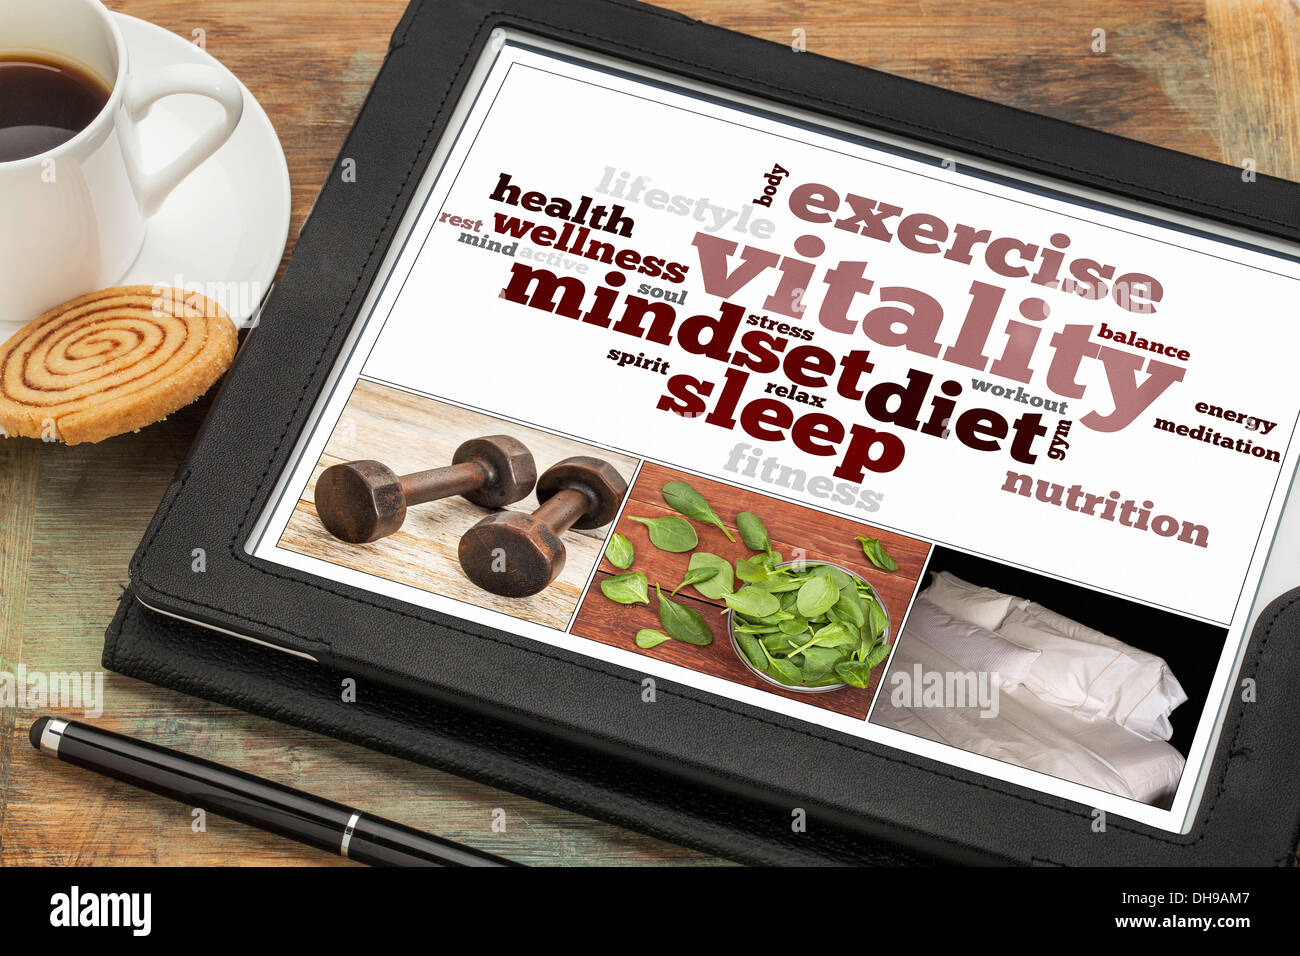 La vitalidad o energía vital concepto en una tableta digital, un collage de imágenes y la palabra nube Foto de stock